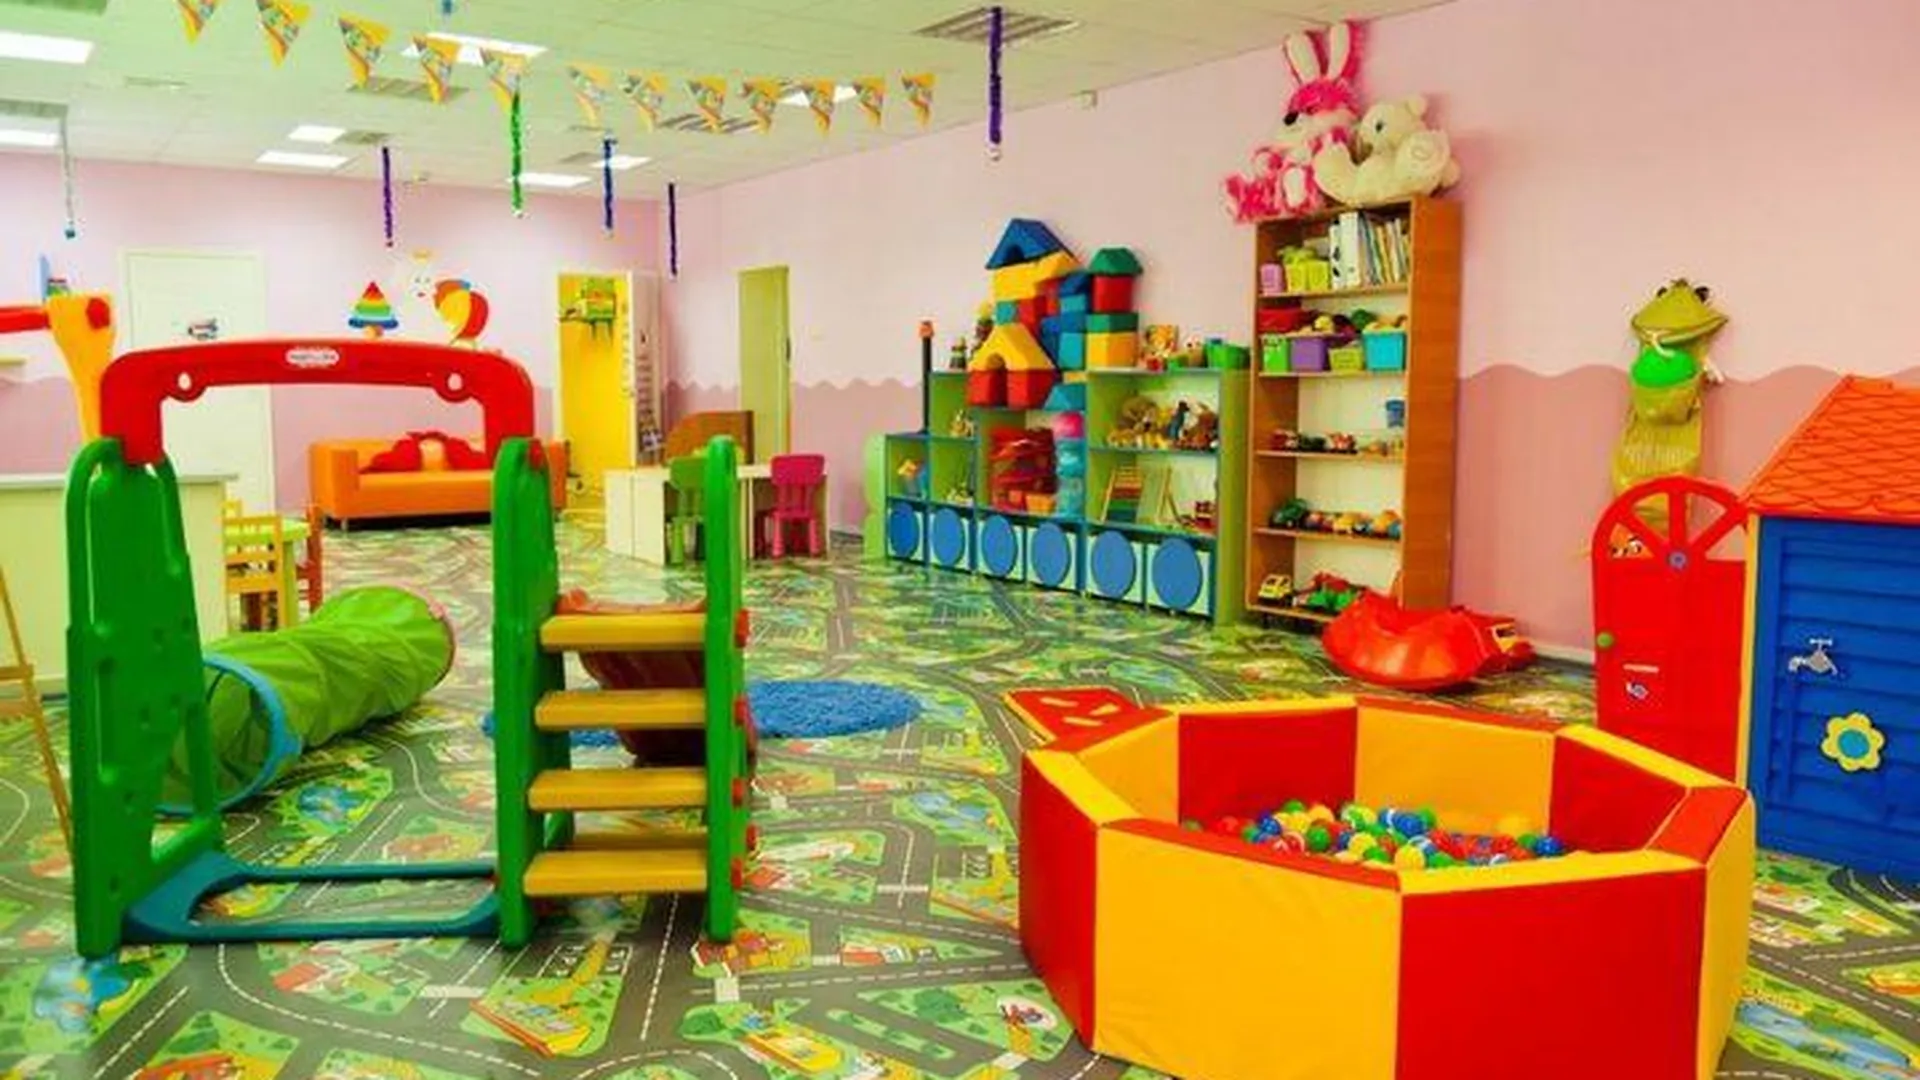 Порядка 340 детских садов построили в Подмосковье за 5 лет